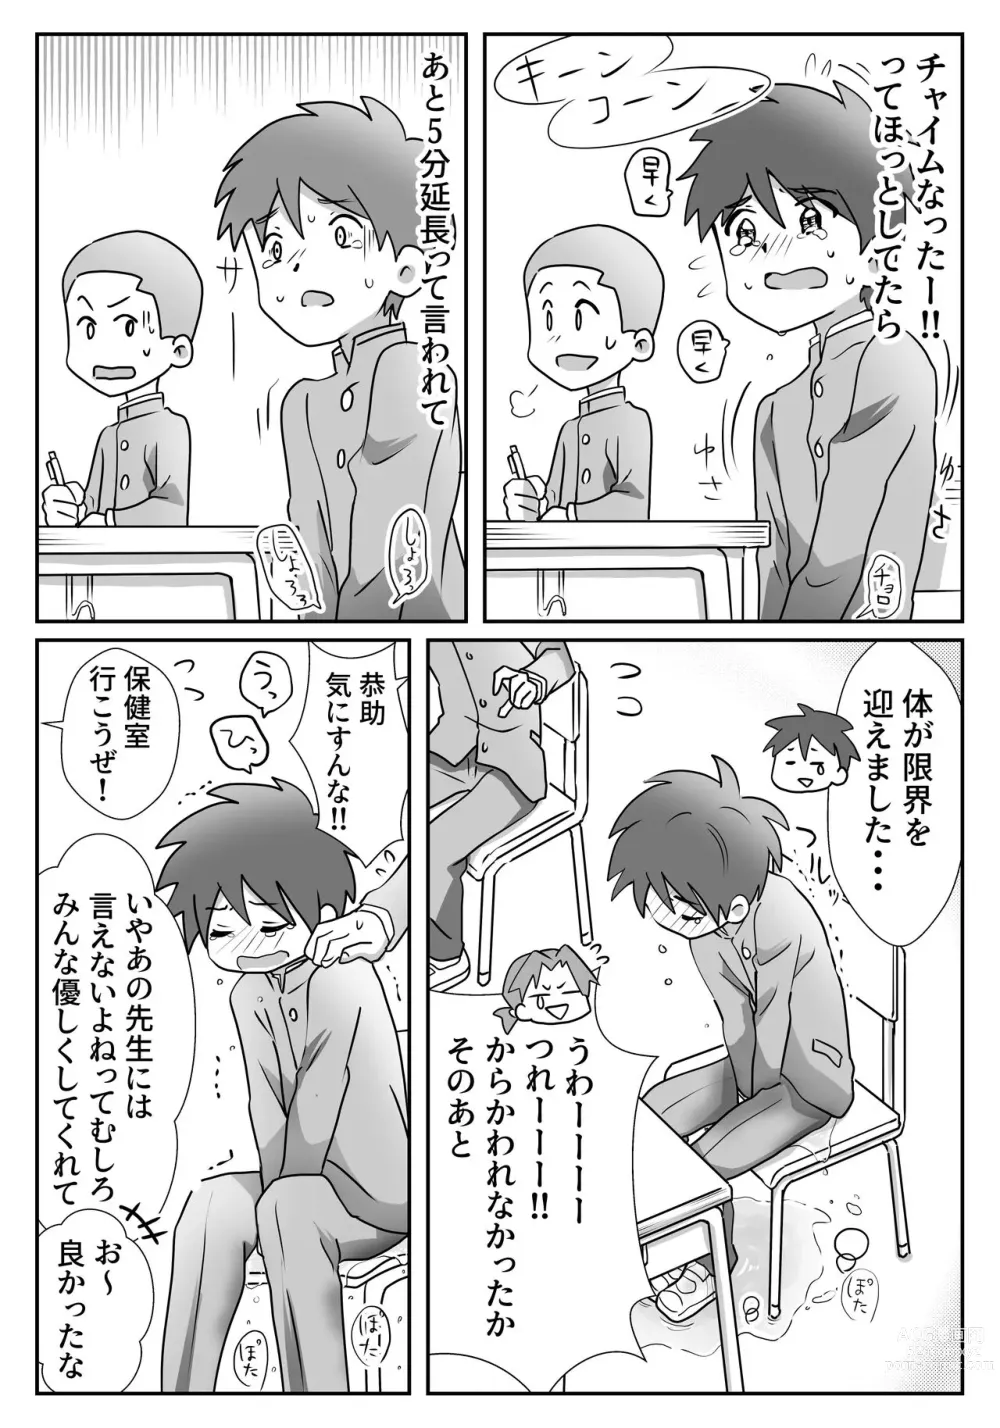 Page 7 of doujinshi Yuu-kun to Kyousuke